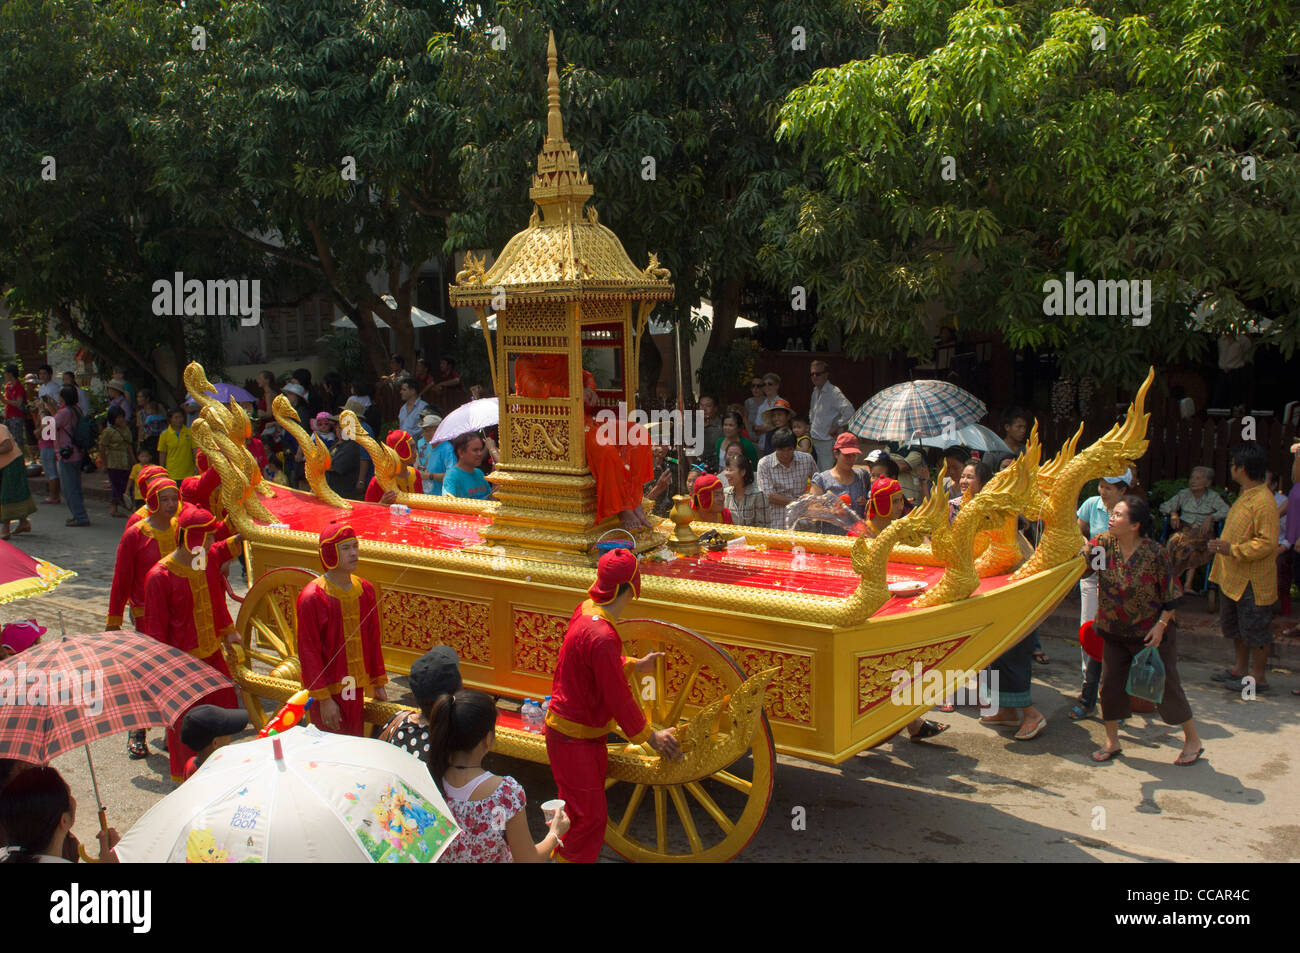 Buddhistischen Abt gedrängt in einem goldenen Wagen in einer Prozession, Mue Nau, Lao Neujahr (Pi Mai Lao), Luang Prabang, Laos Stockfoto